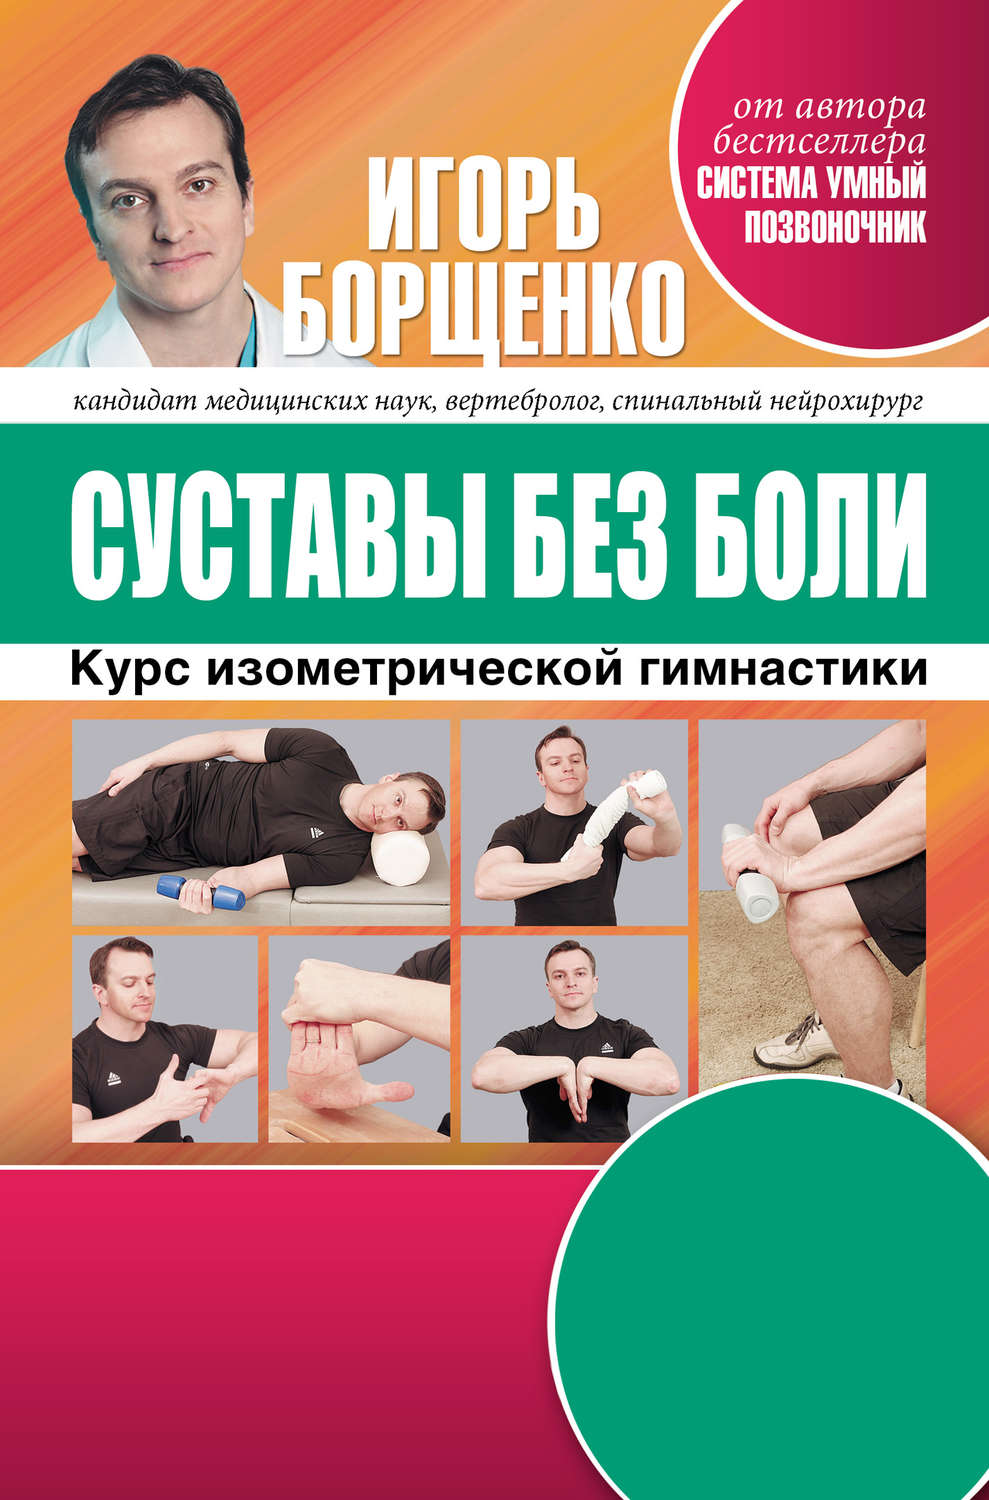 Книга умный позвоночник автор борщенко скачать бесплатно